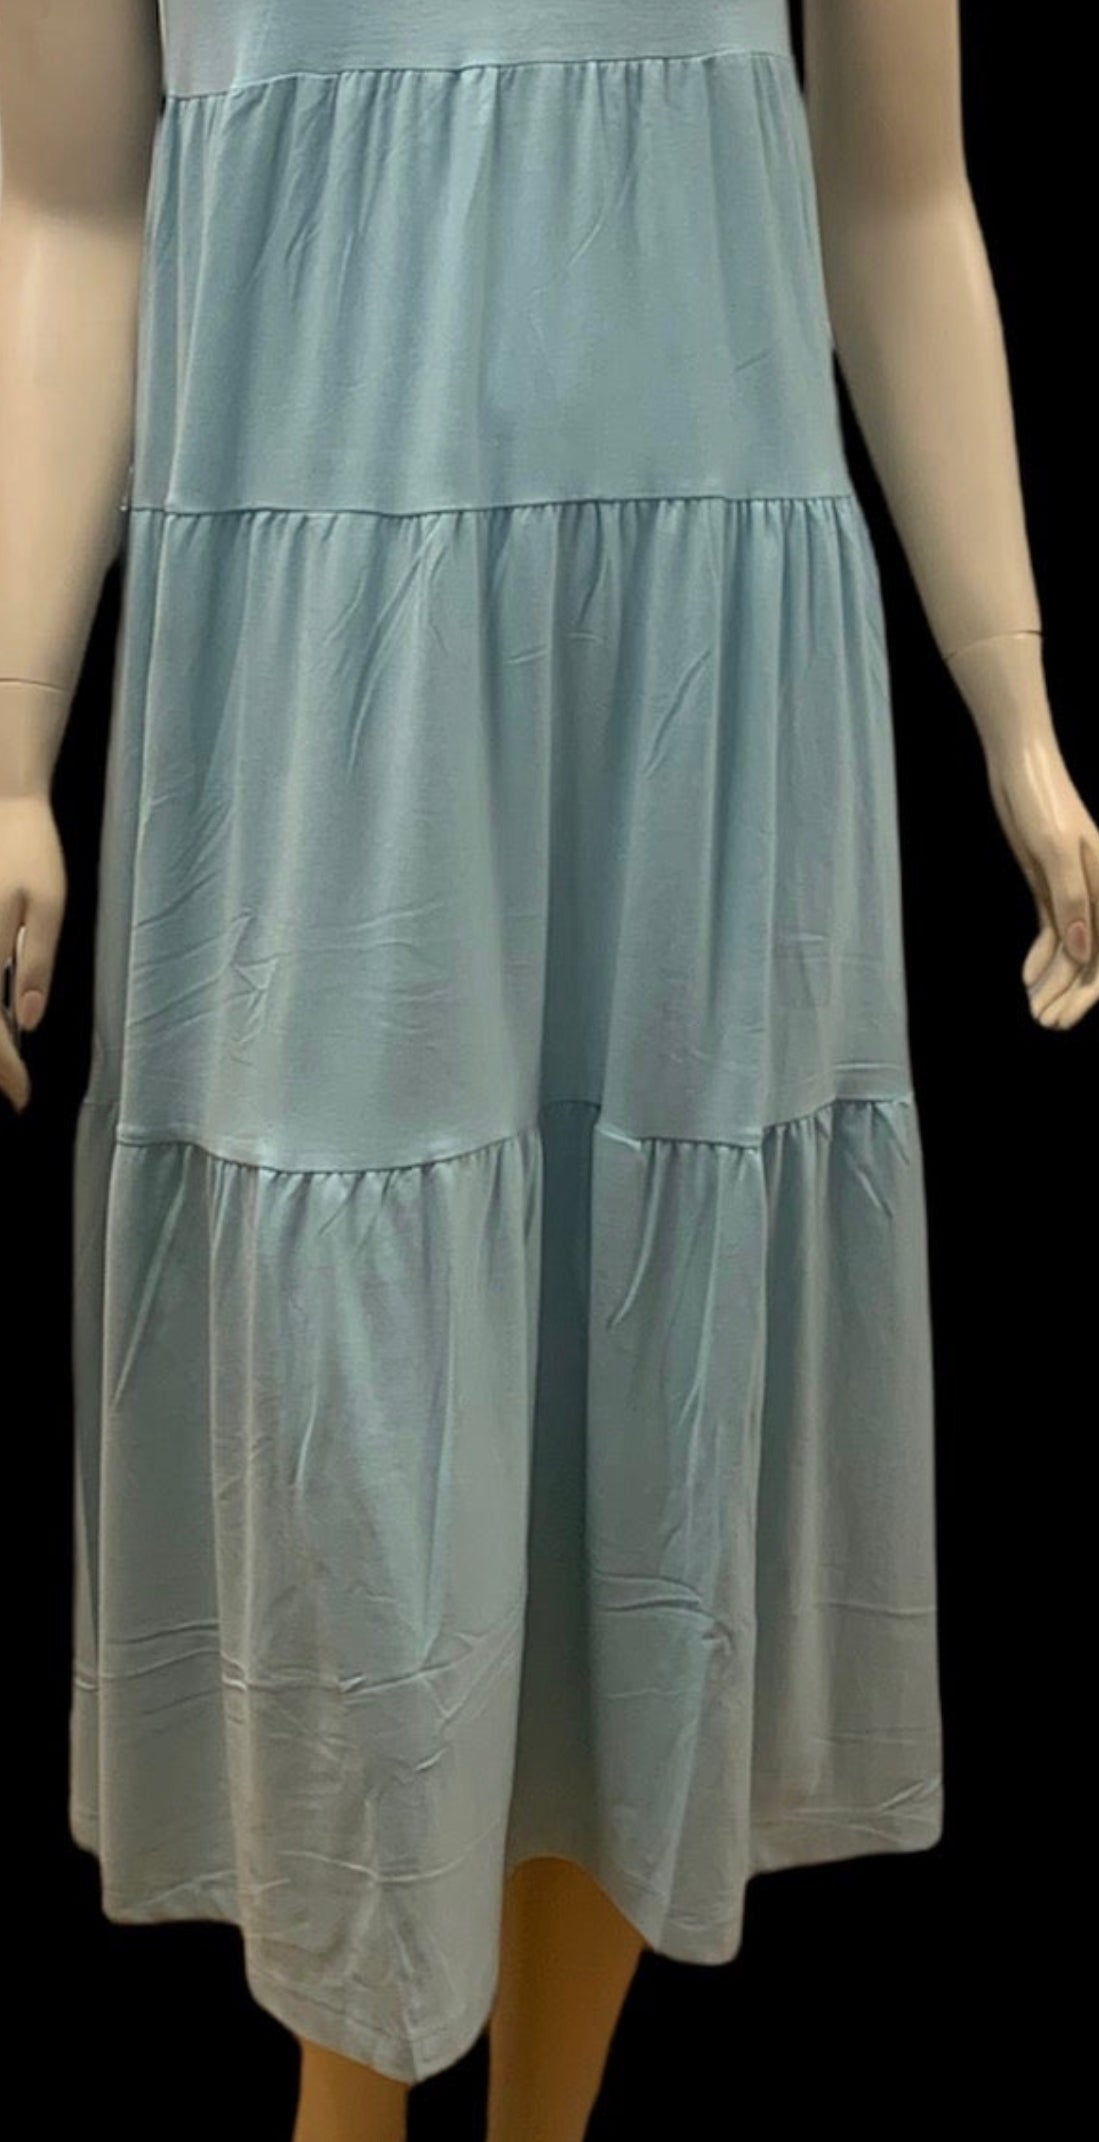 Short Sleeve Long Mint Dress